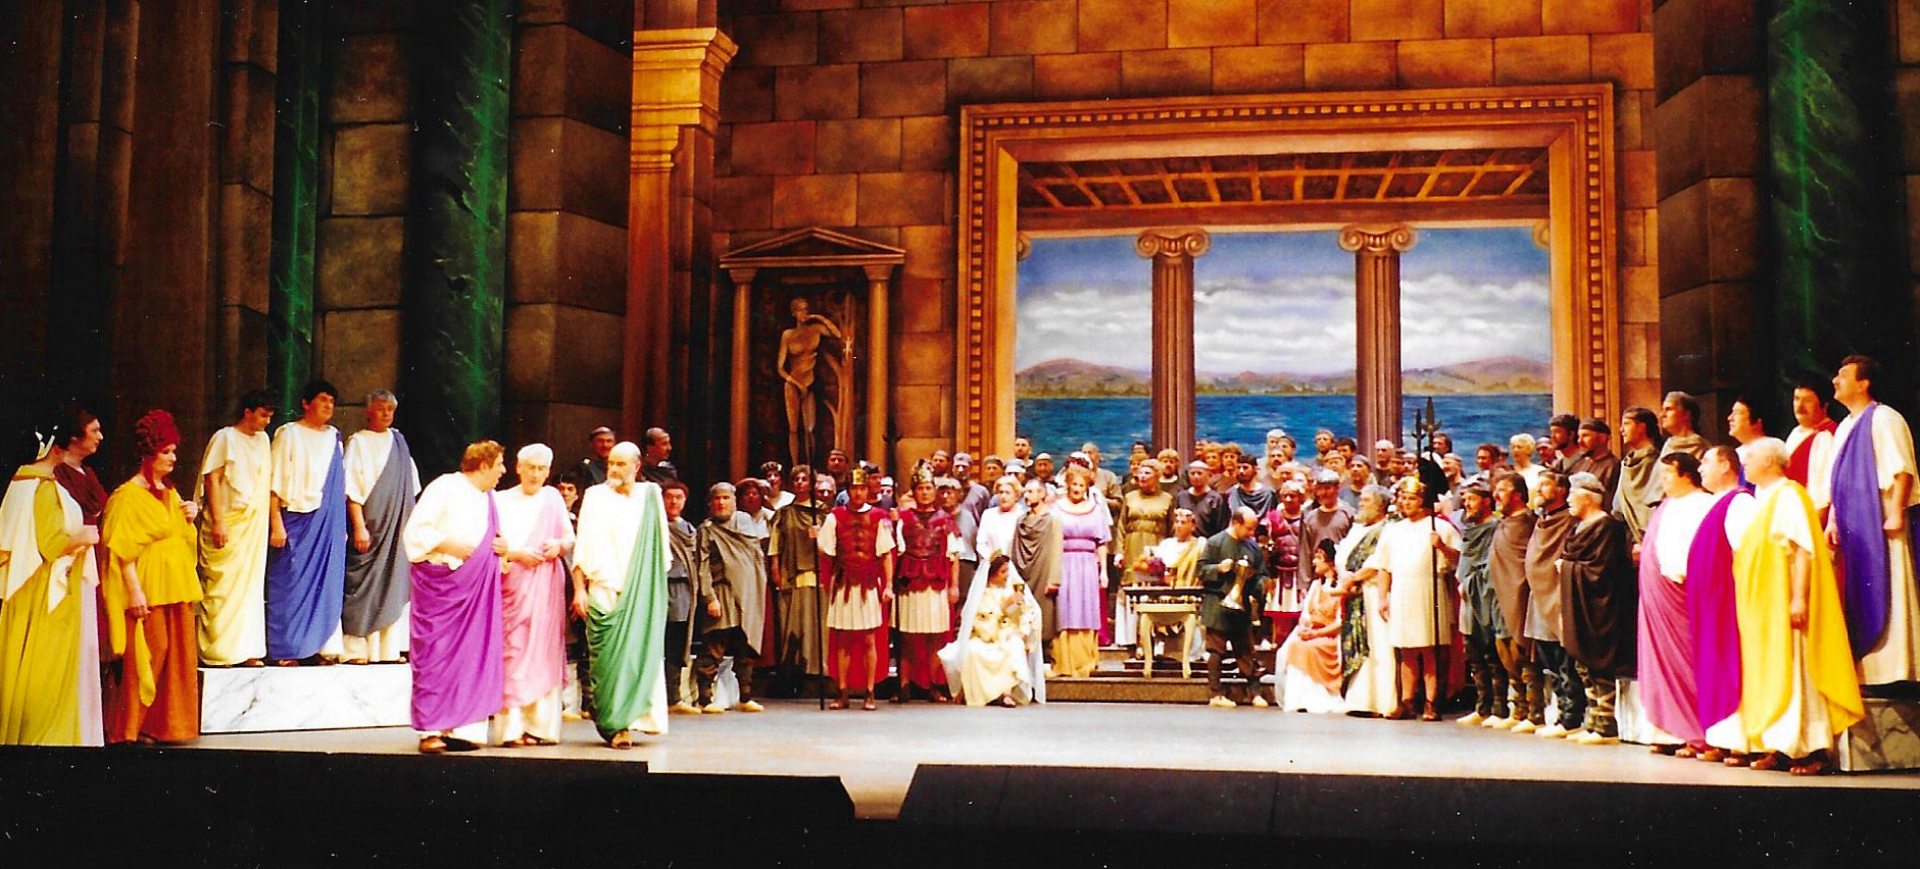 En dubbelte Agrippina - Divertissementchen 1994 - Chor und Solisten in römischer Kulisse